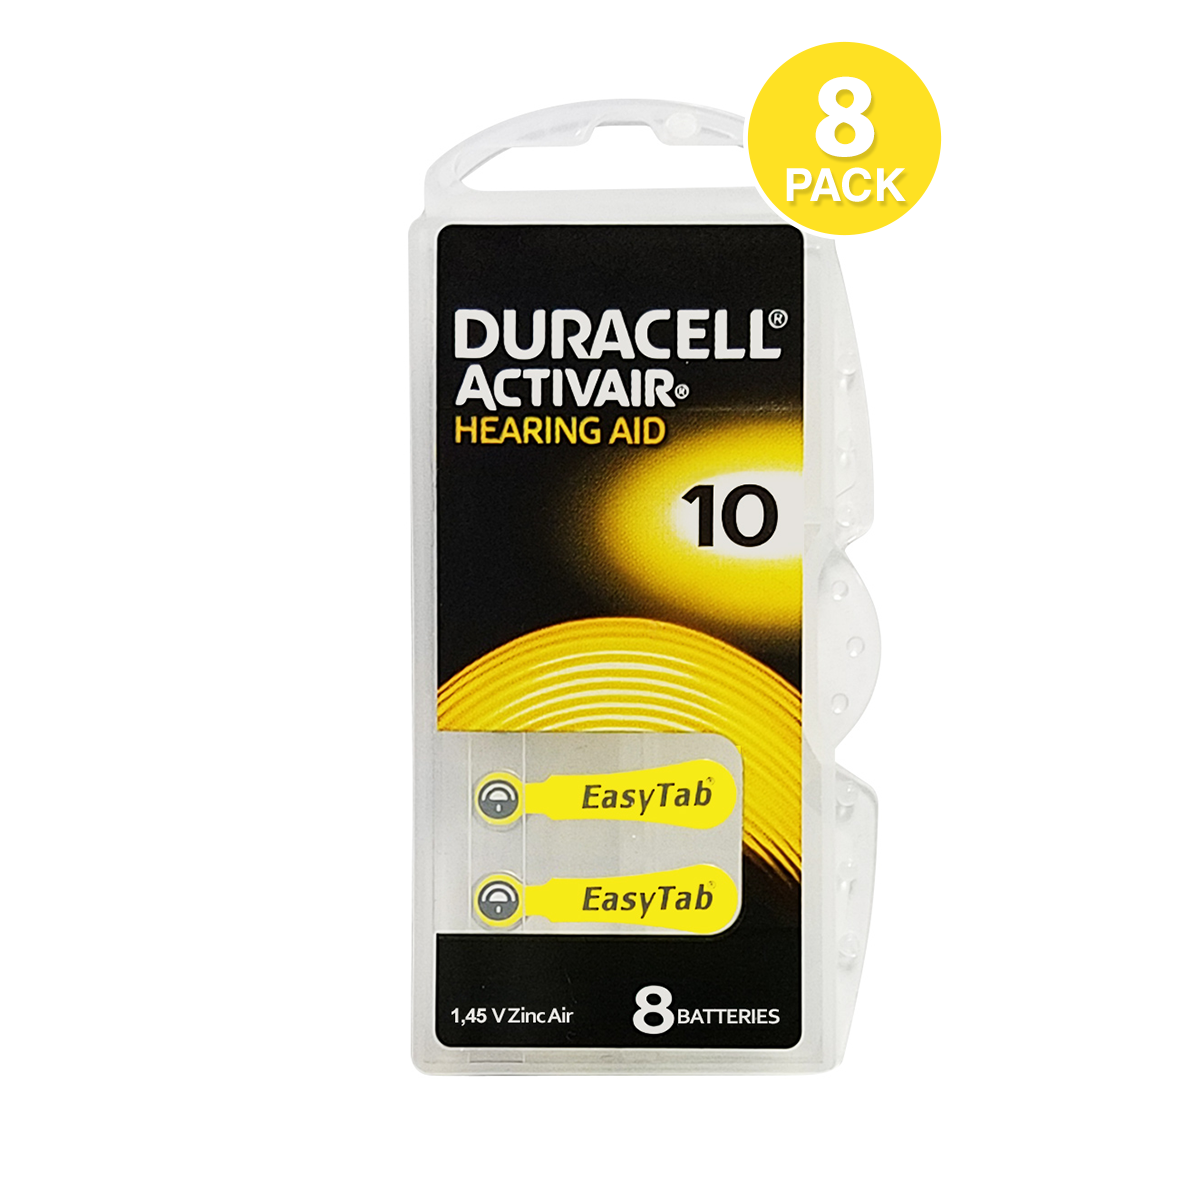 Duracell 10 Battery